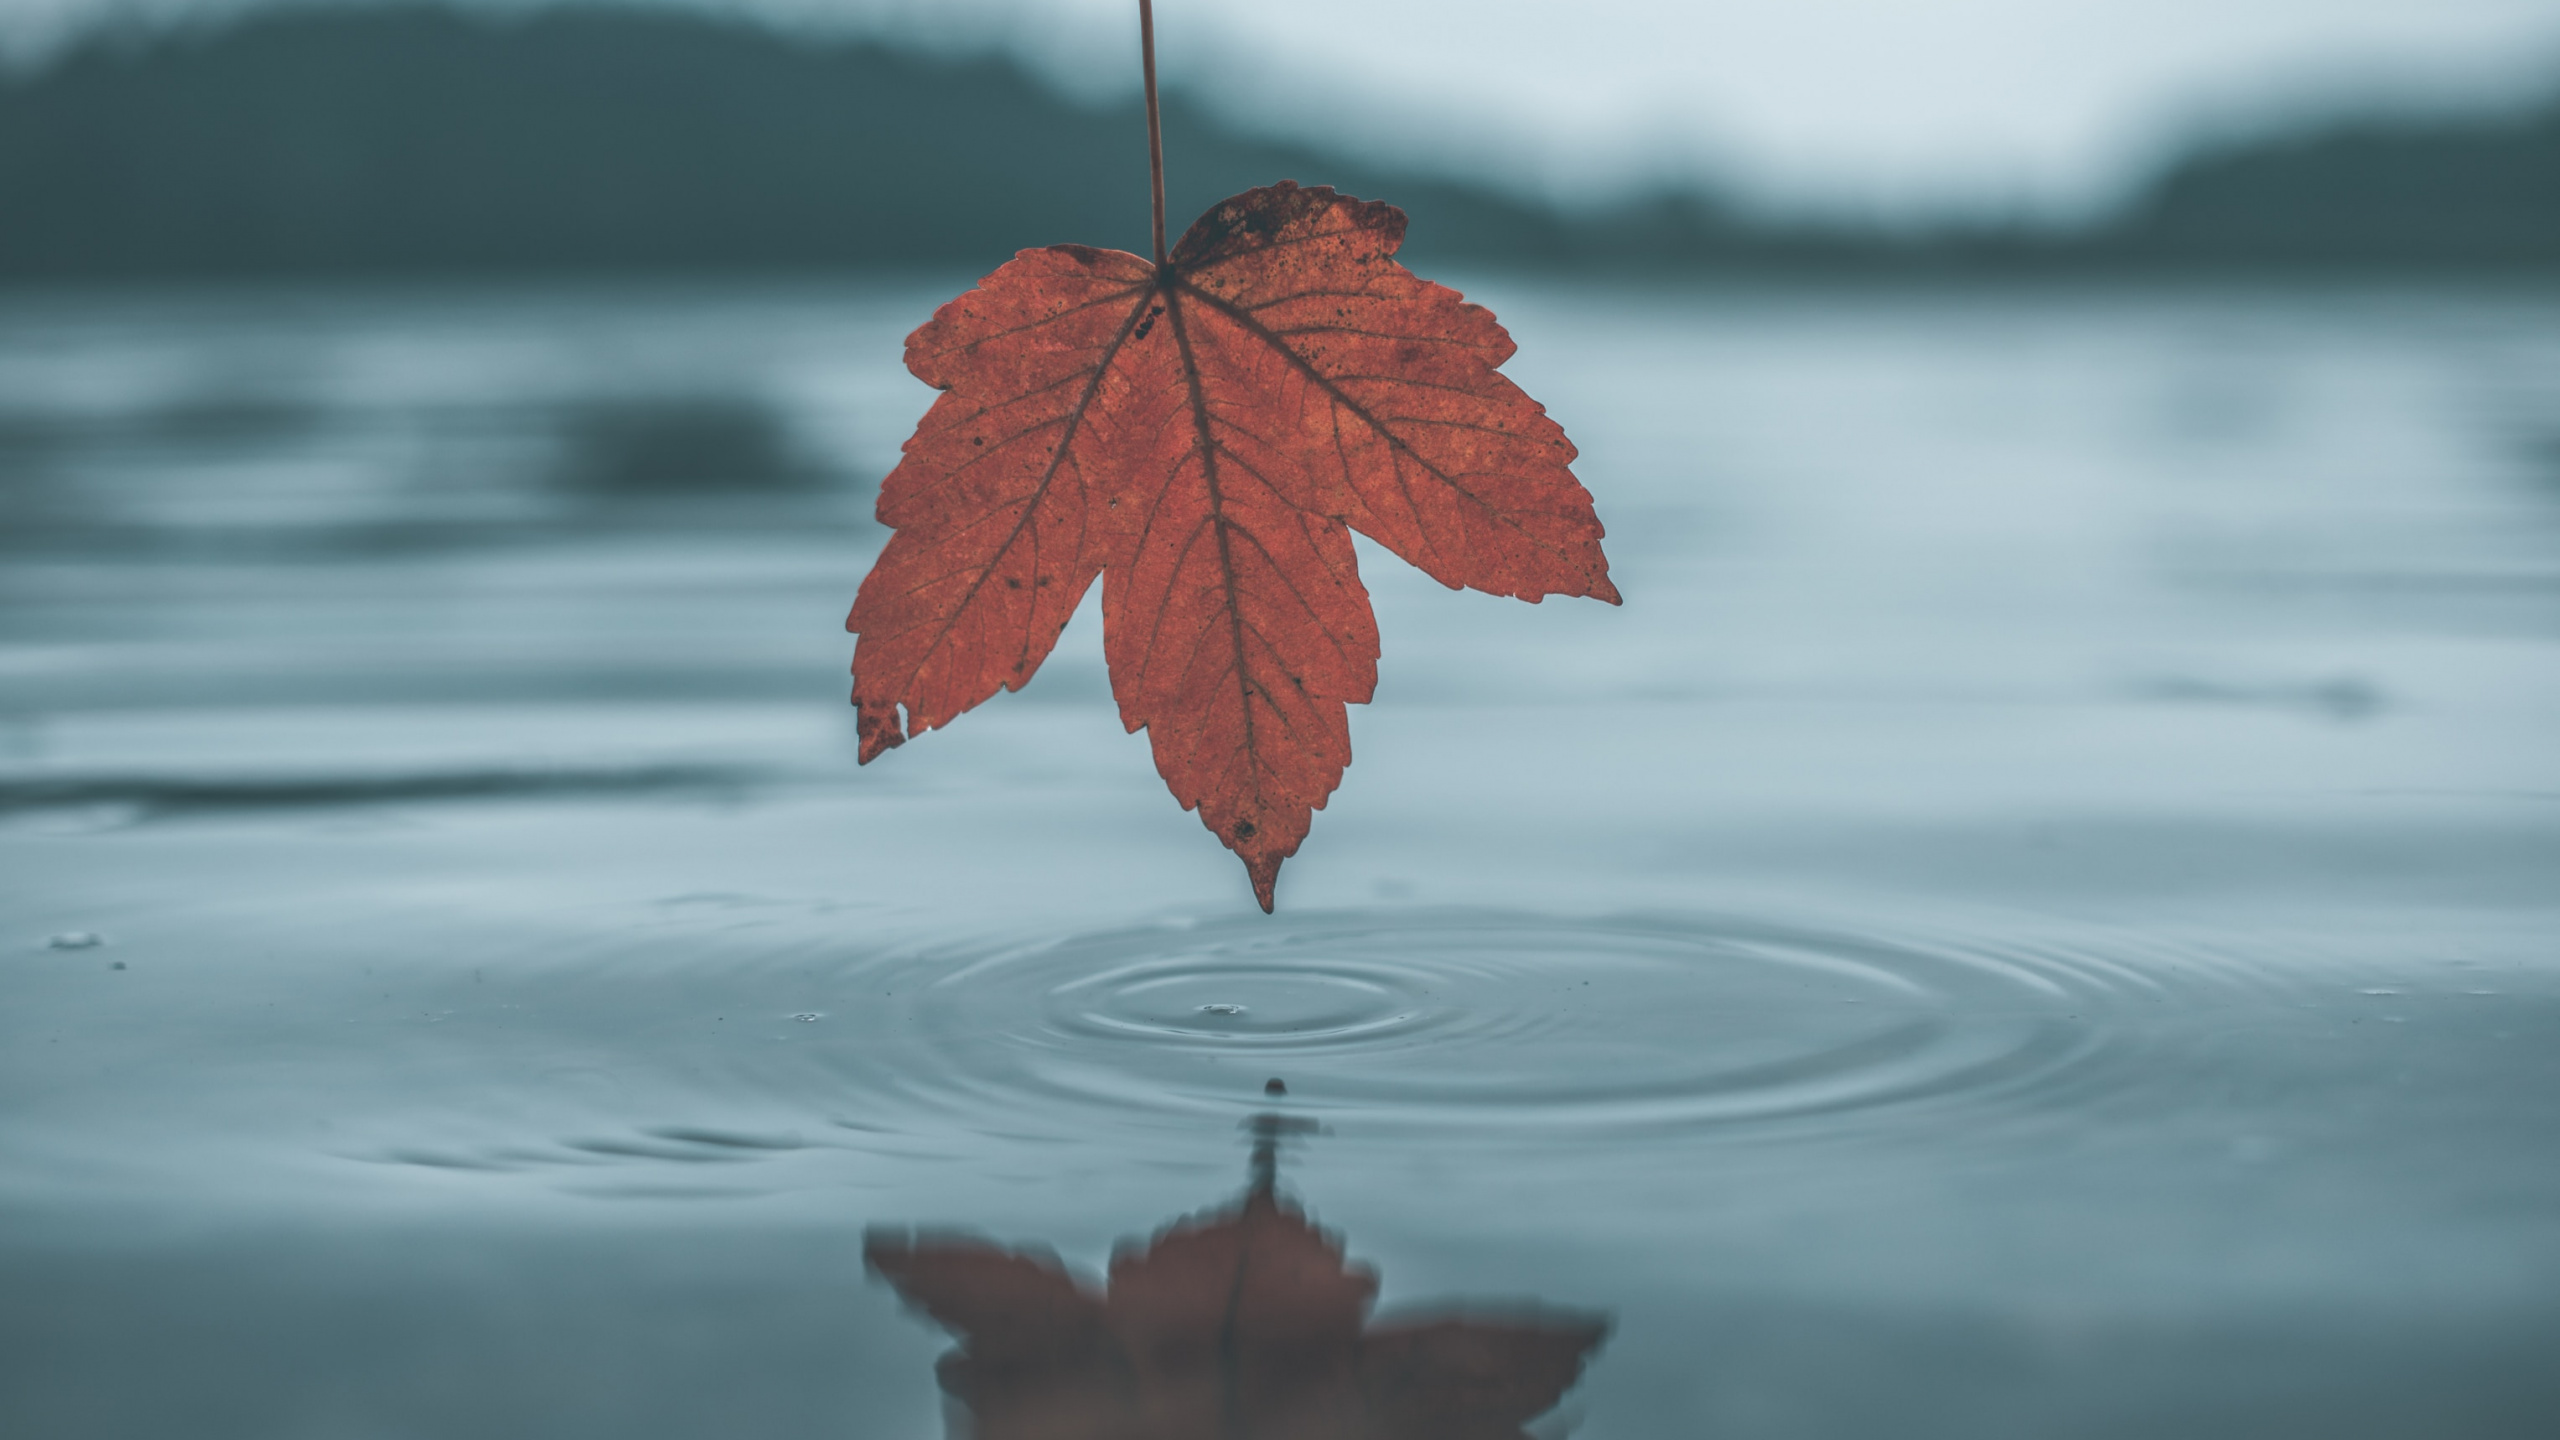 Blatt, Wasser, Baum, Reflexion, Maple Leaf. Wallpaper in 2560x1440 Resolution